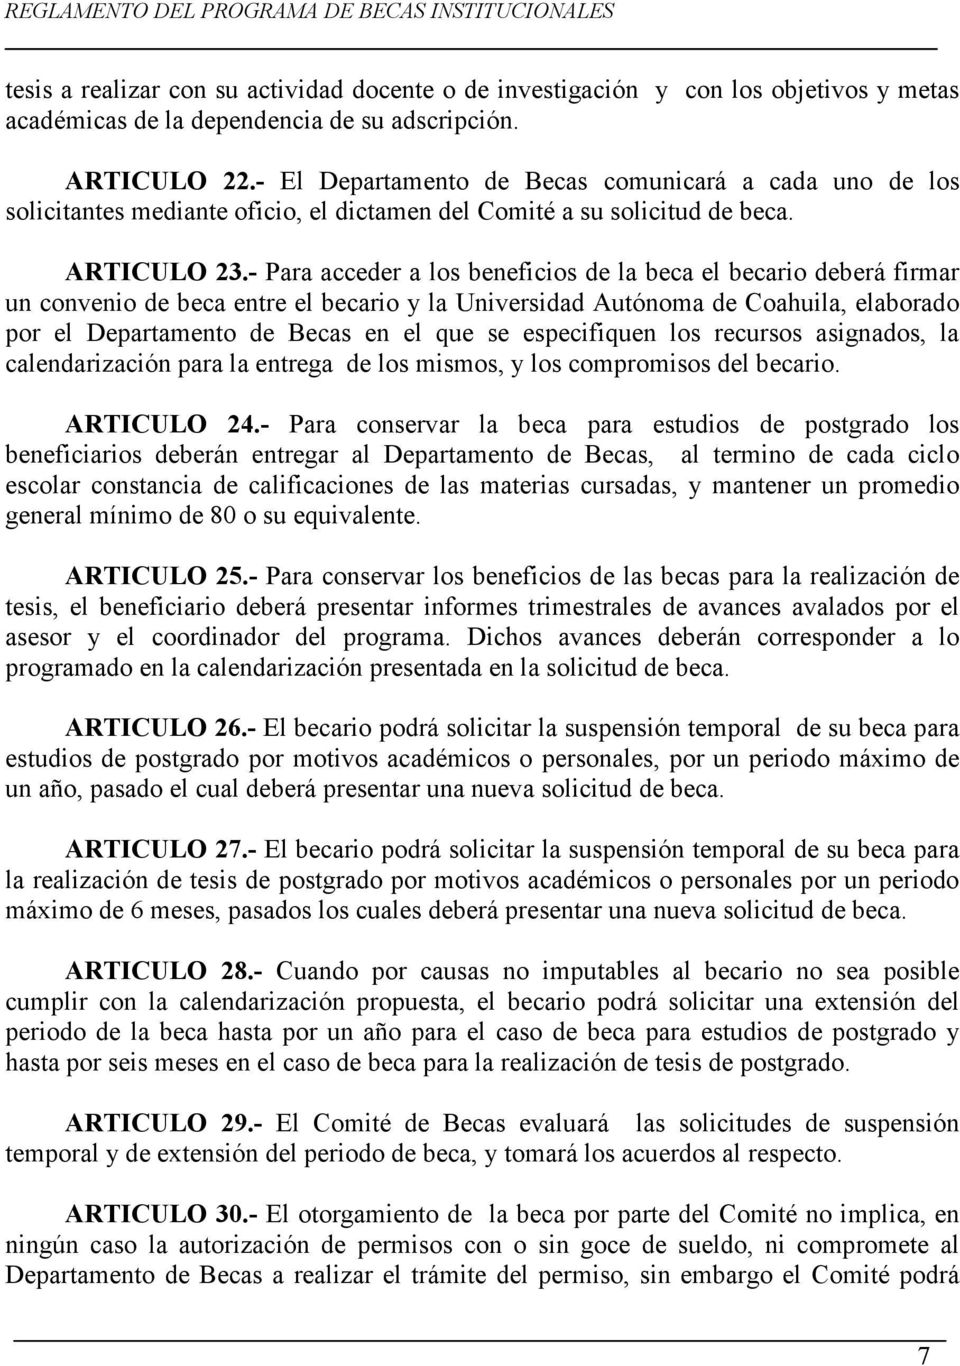 - Para acceder a los beneficios de la beca el becario deberá firmar un convenio de beca entre el becario y la Universidad Autónoma de Coahuila, elaborado por el Departamento de Becas en el que se